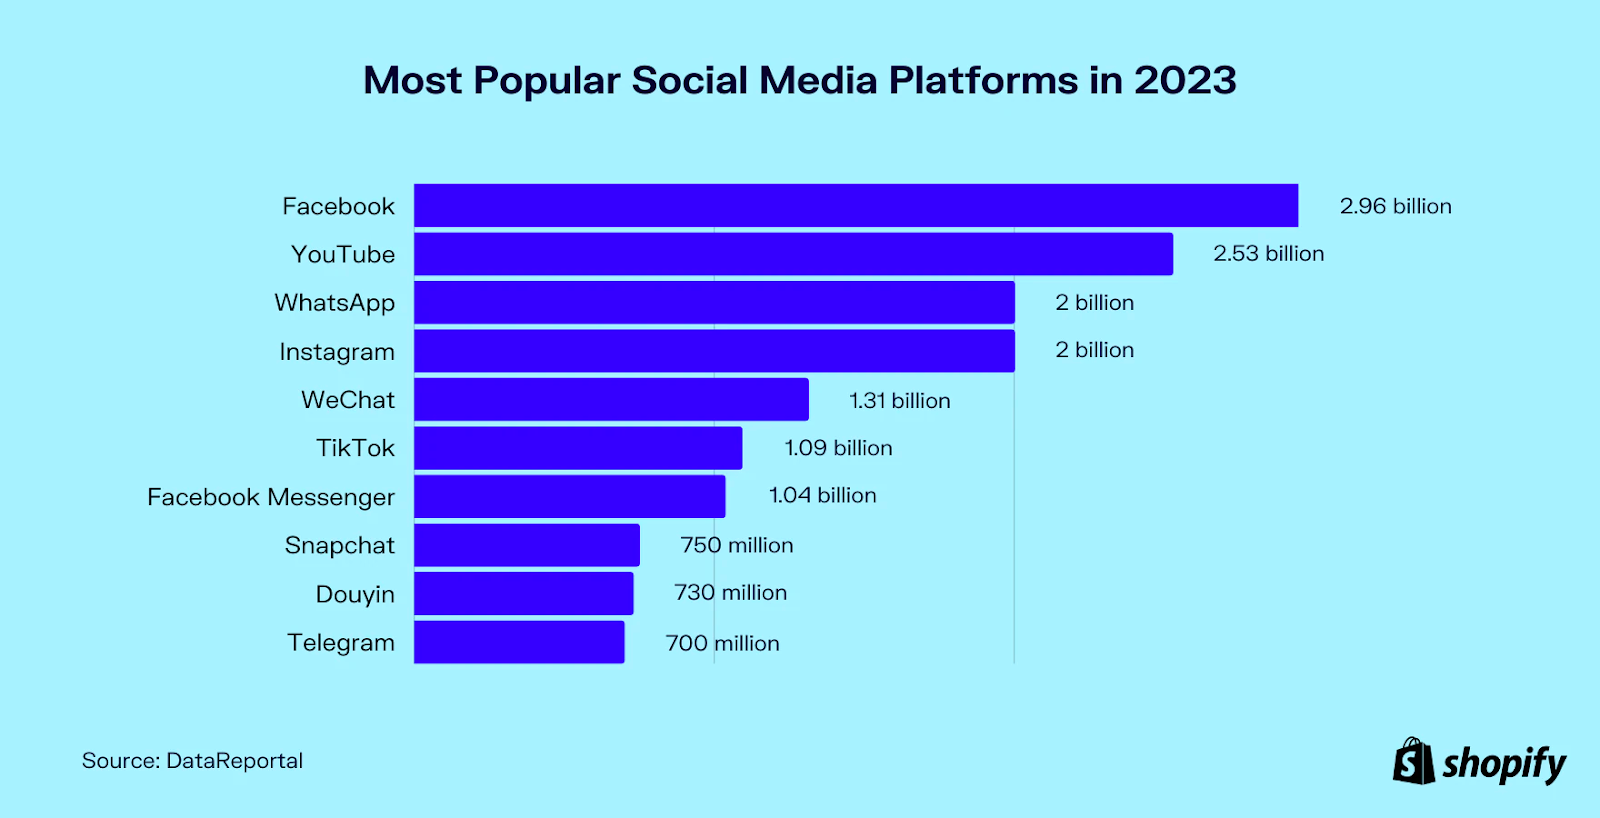 most popular social media platforms